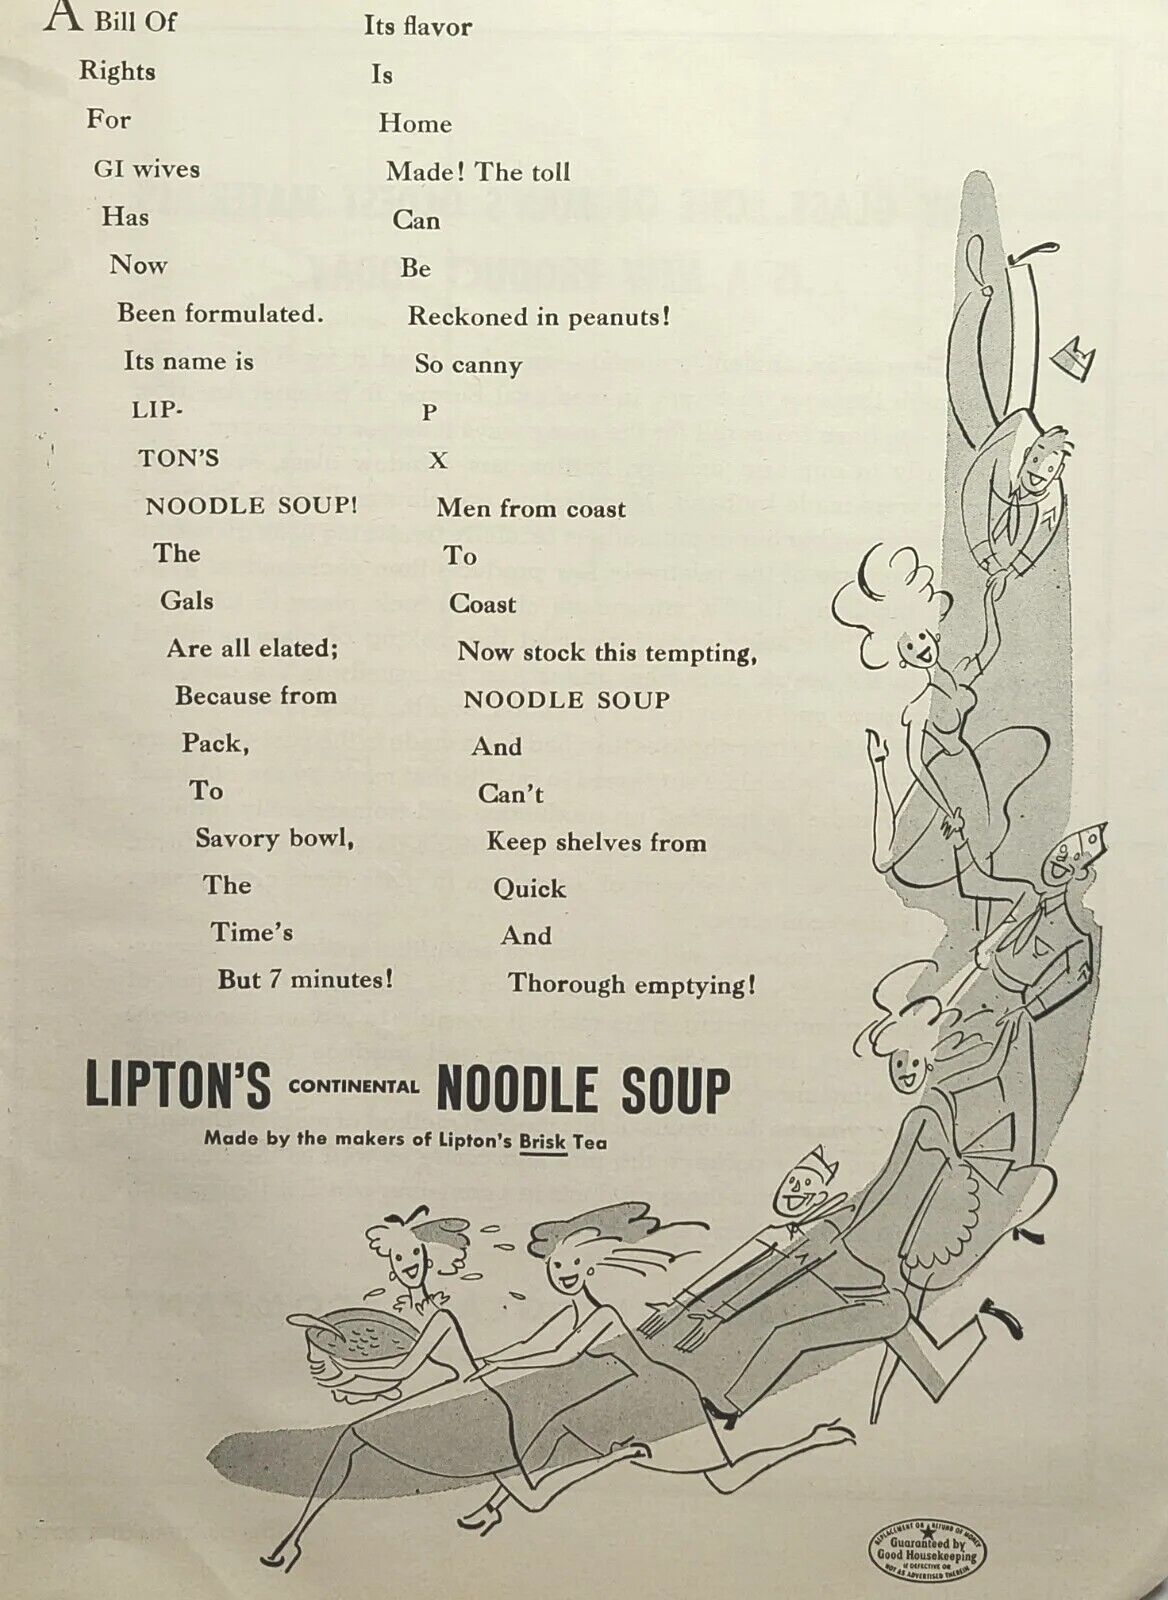 Lipton\'s Noodle Soup Servicemen Ladies Conga Line Dance Vintage Print Ad 1945